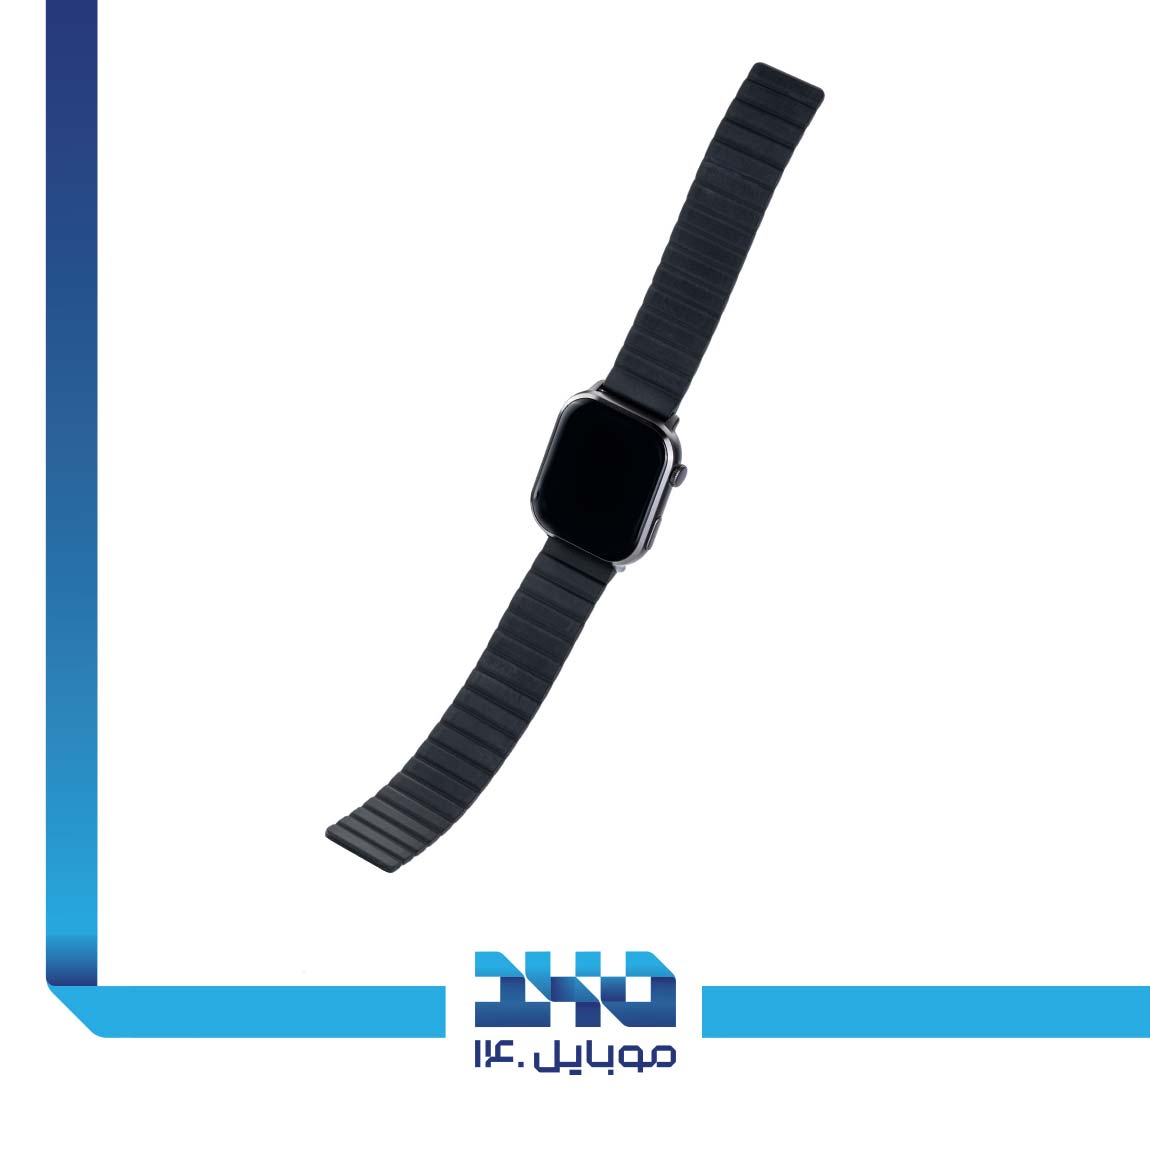 Imilab W02 smart watch 1